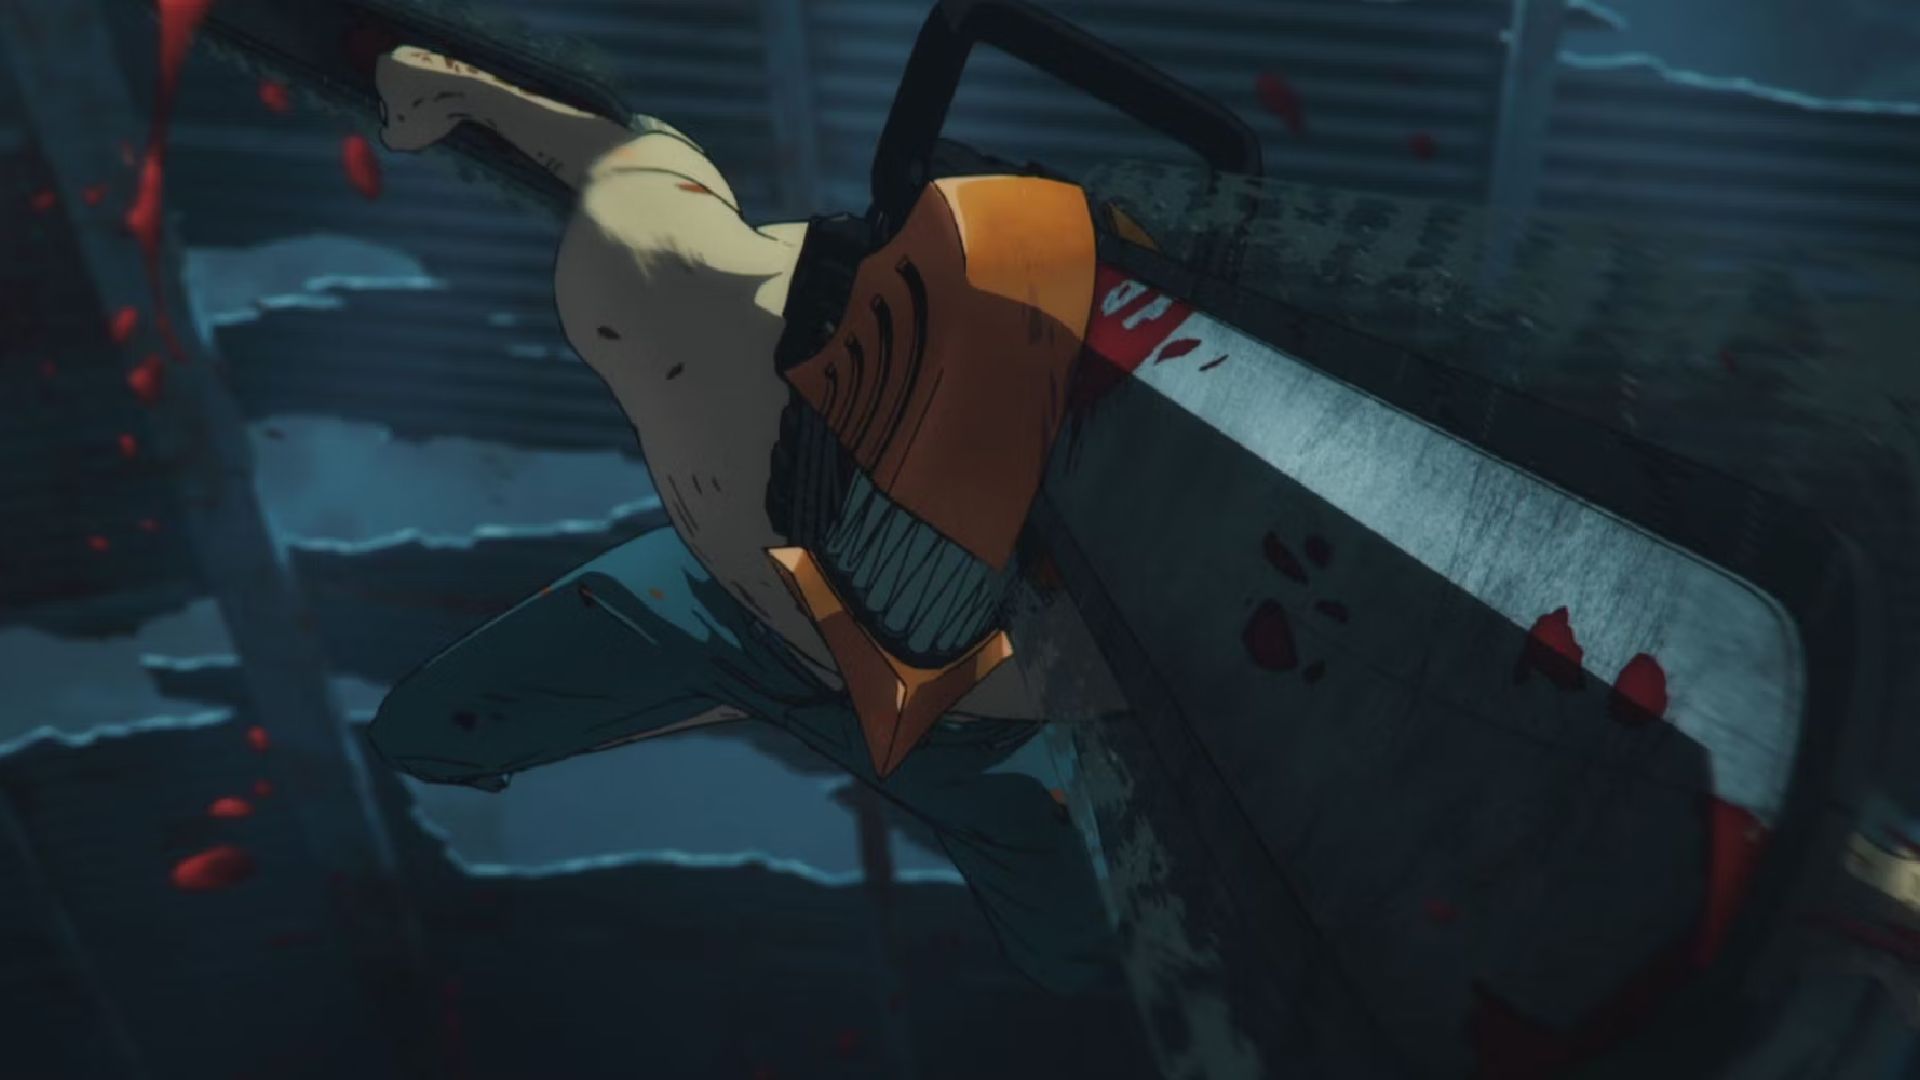 Chainsaw Man”: ¿el anime del año? Nuestras impresiones del primer episodio  - Infobae